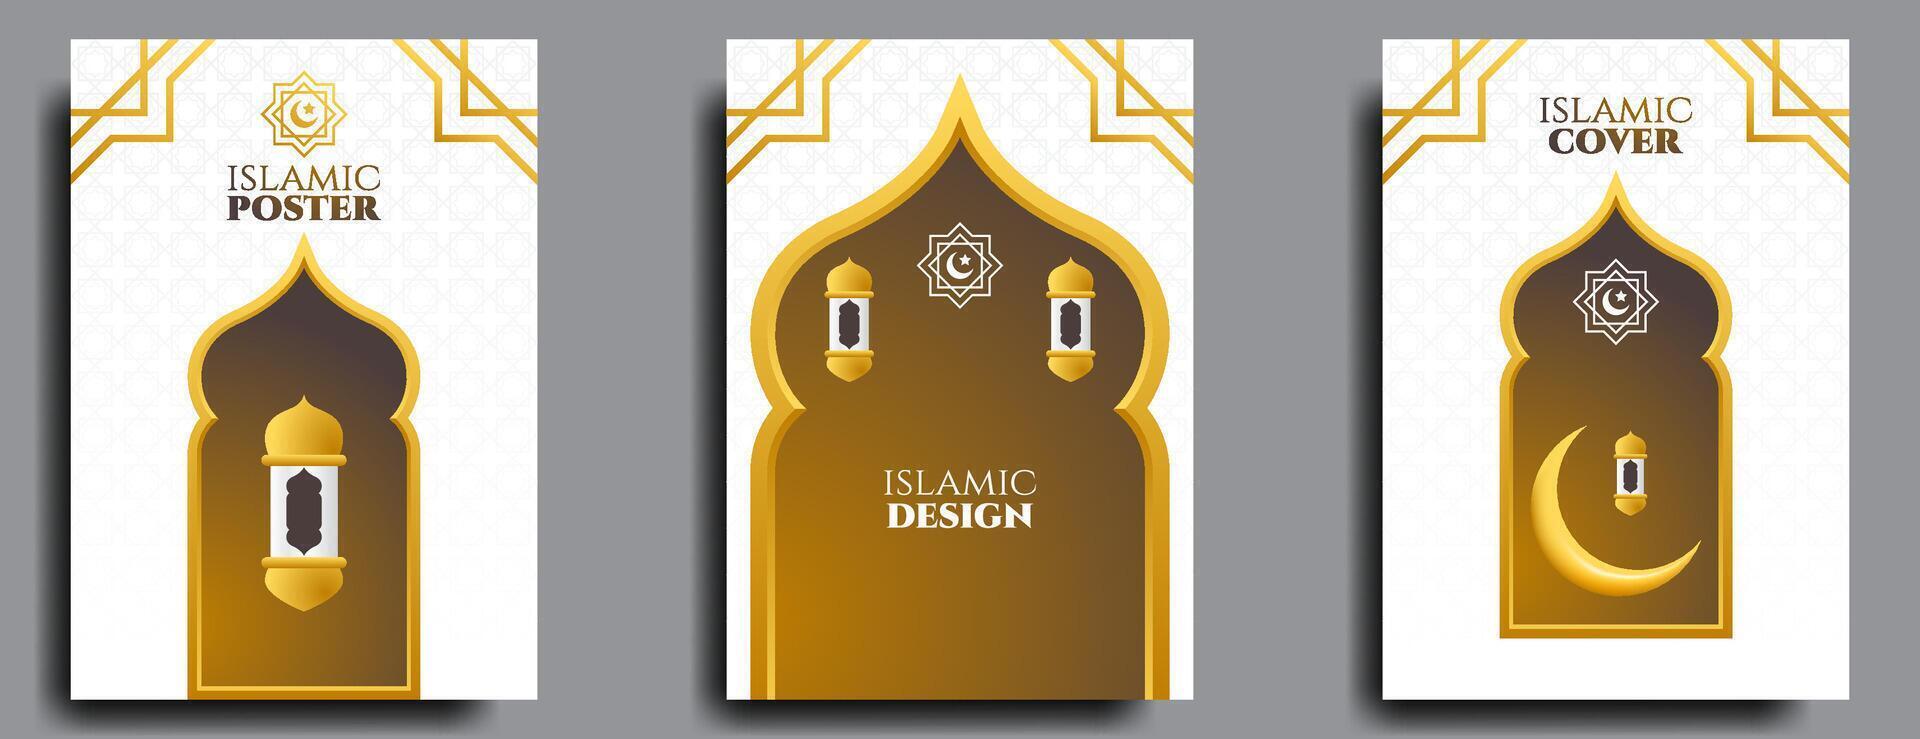 Islamitisch Hoes of poster ontwerp reeks met goud en wit kleur. vector illustratie